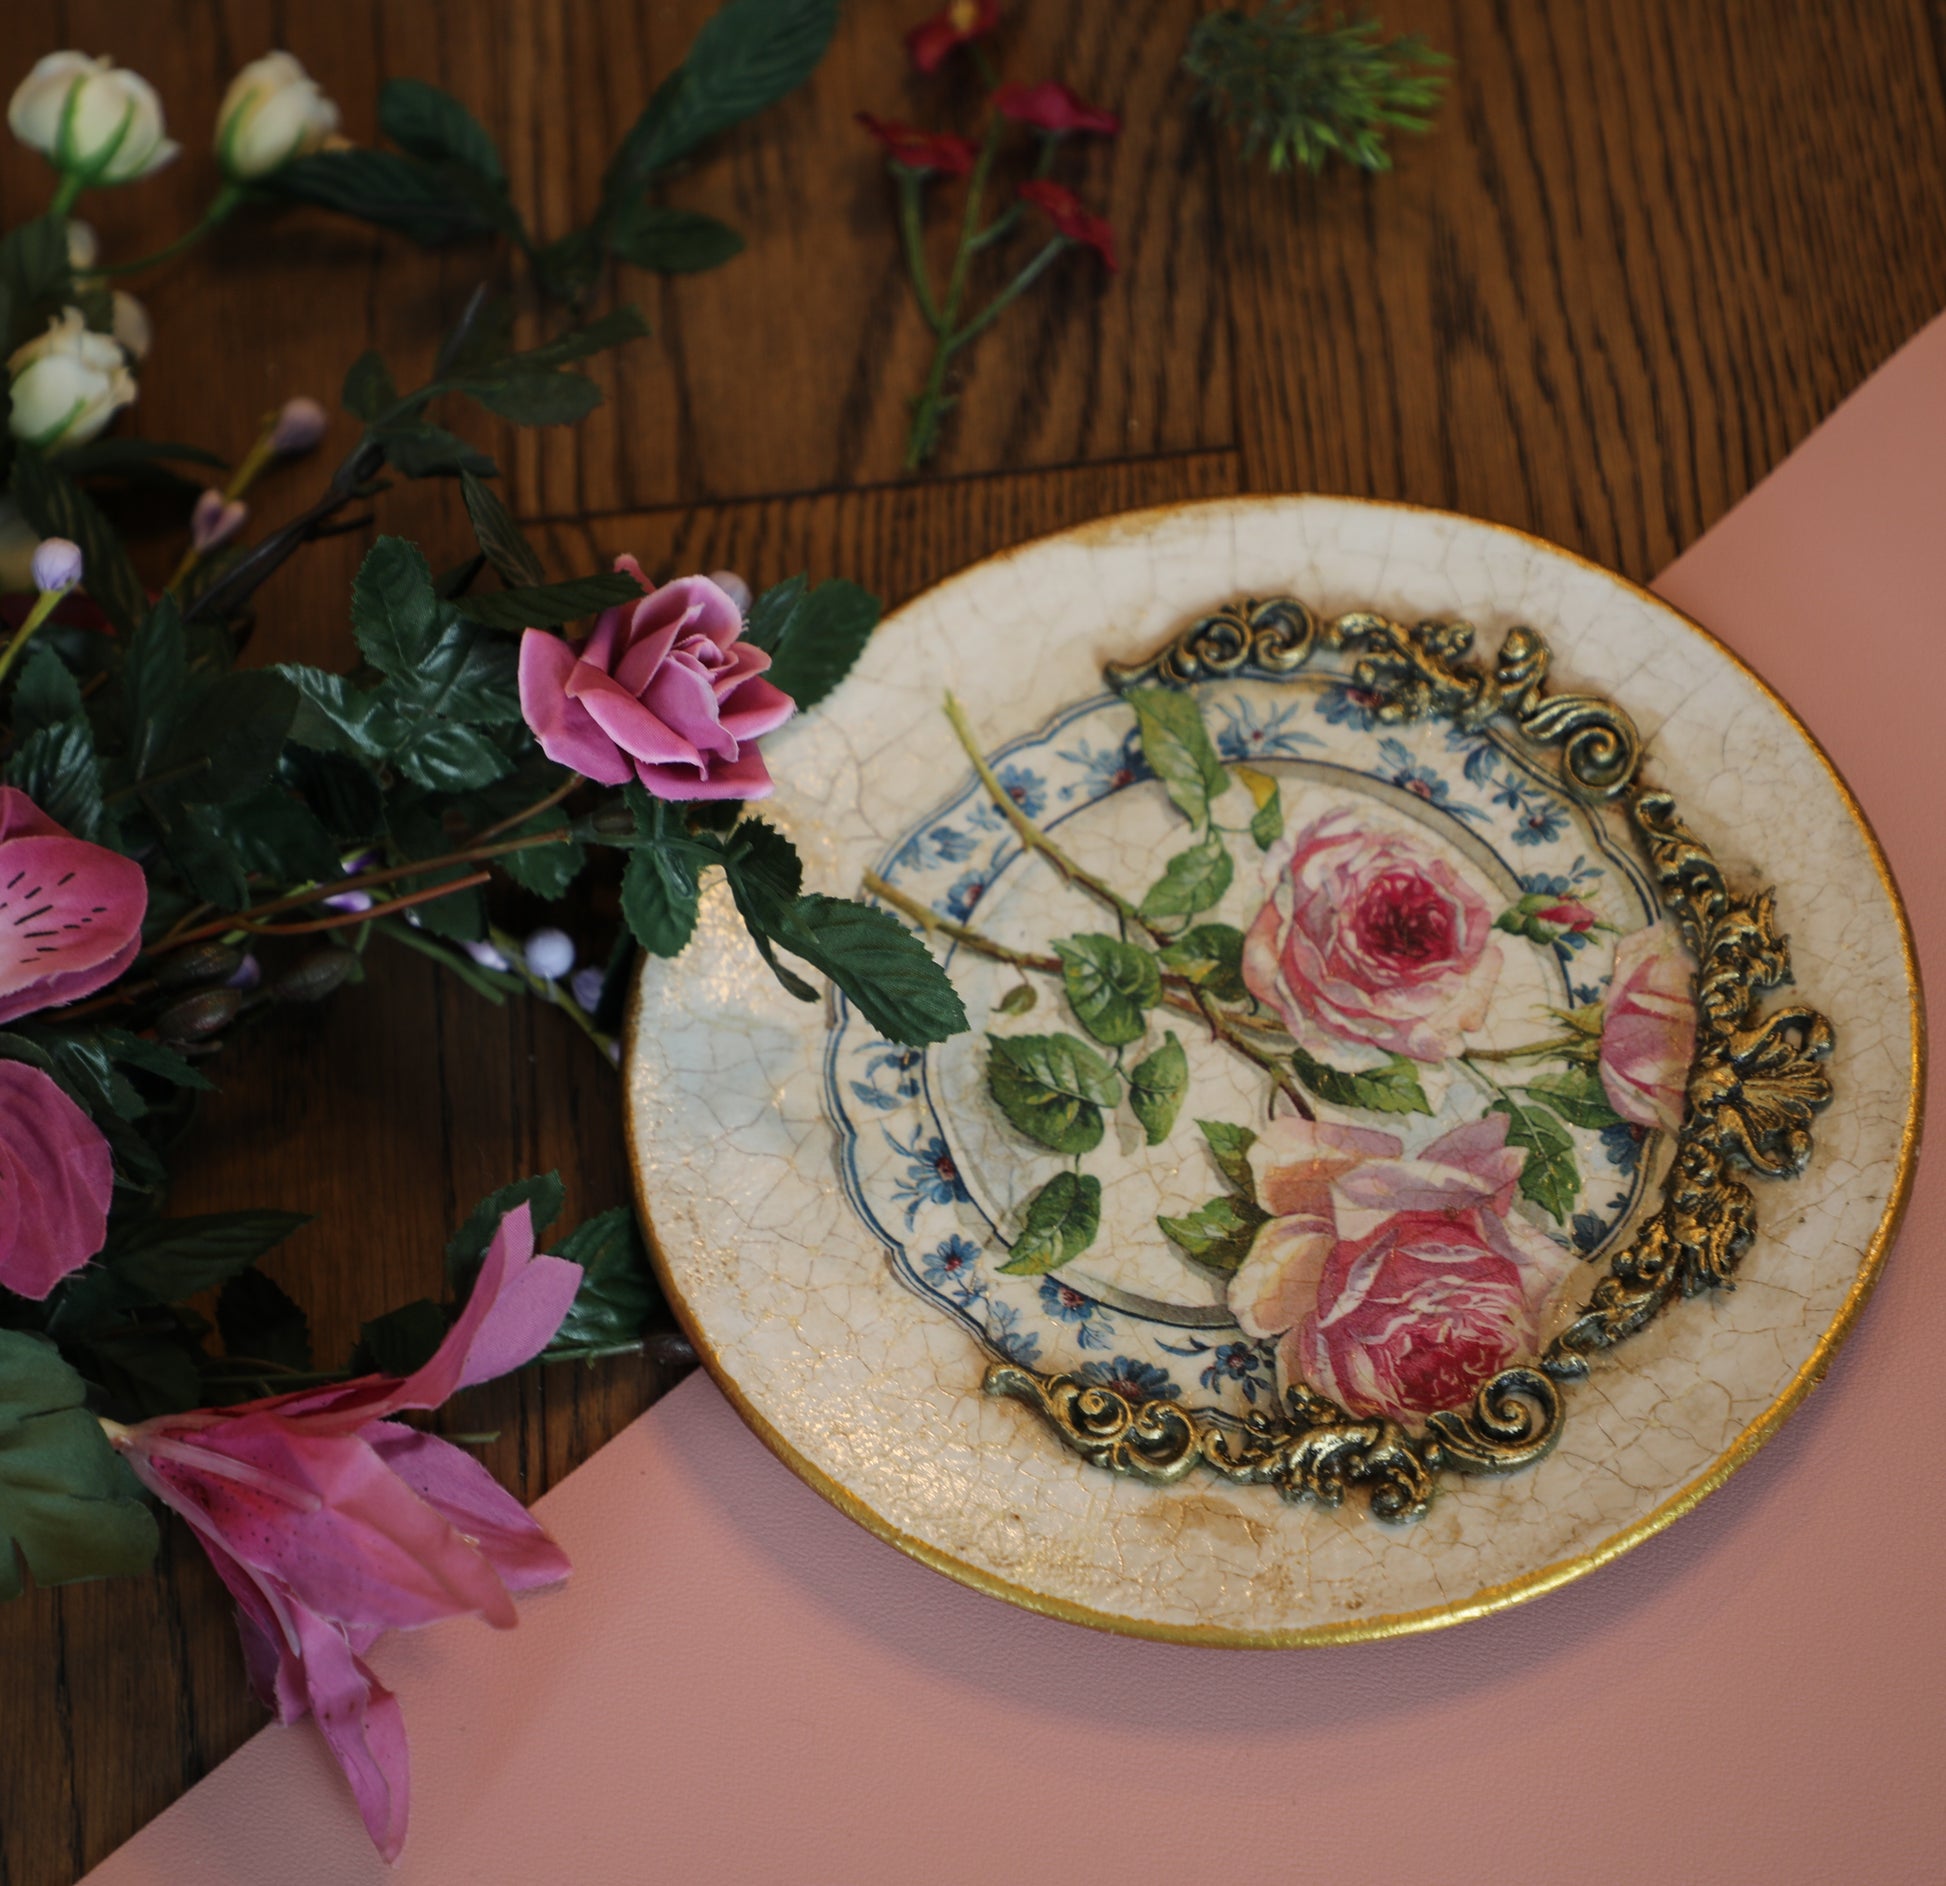 Vintage Floral Plate Decorative Plate - Laila Beauty Care Decorative Plate